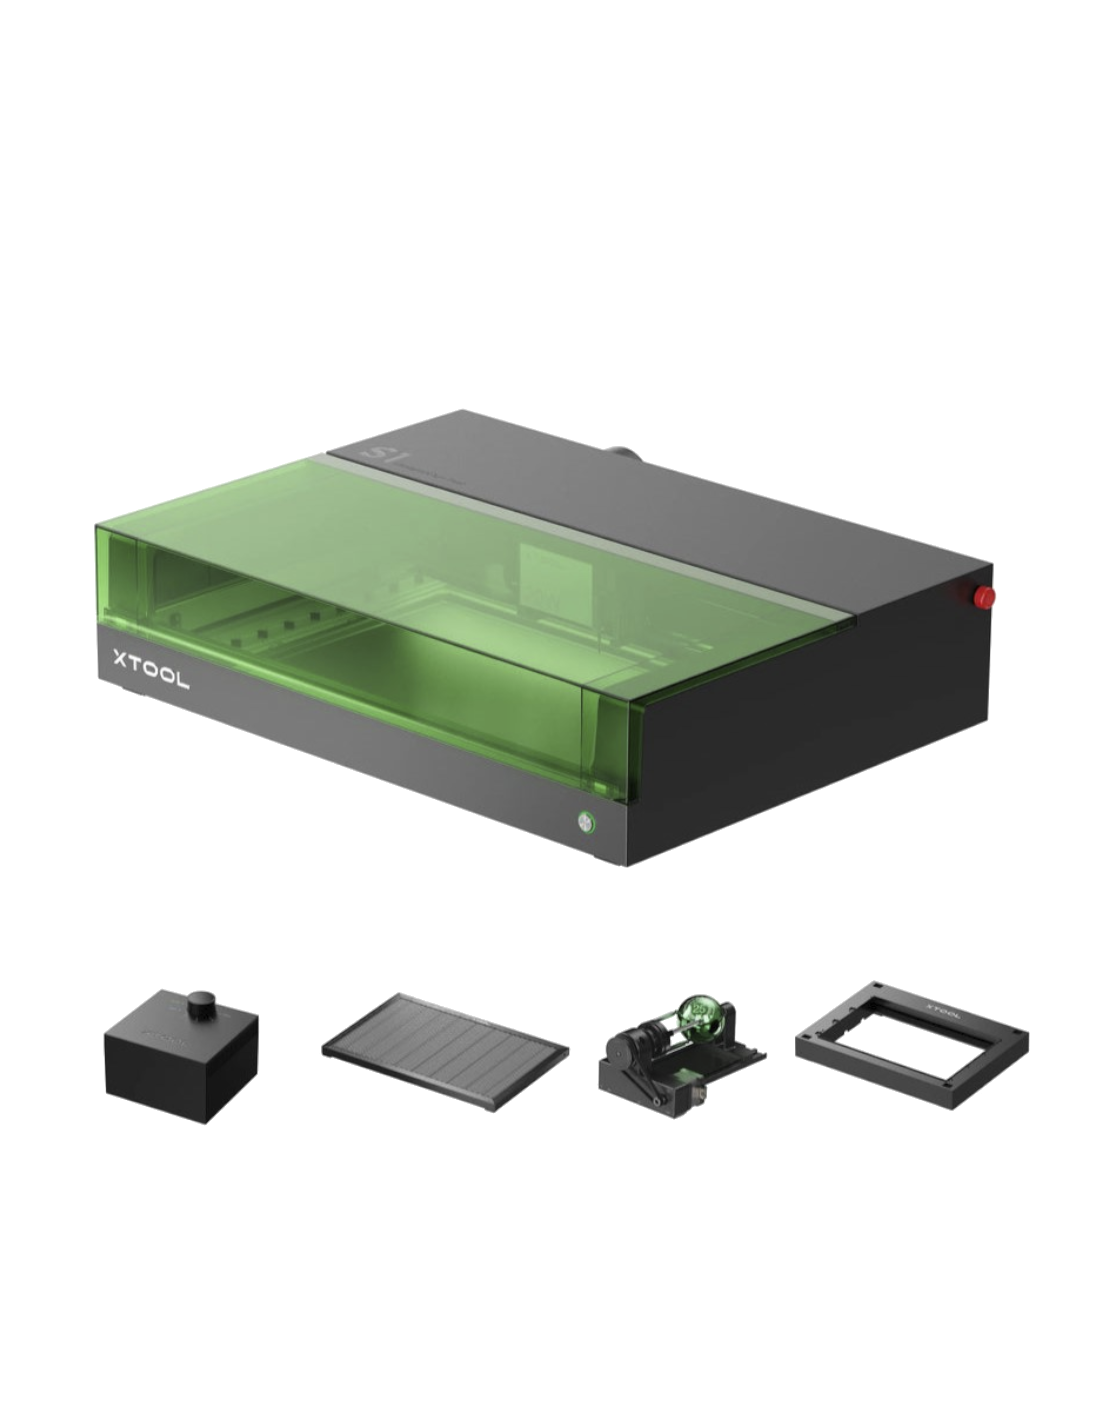 xTool S1 - 20W (Deluxe Kit) - Máquina de grabado y corte por láser